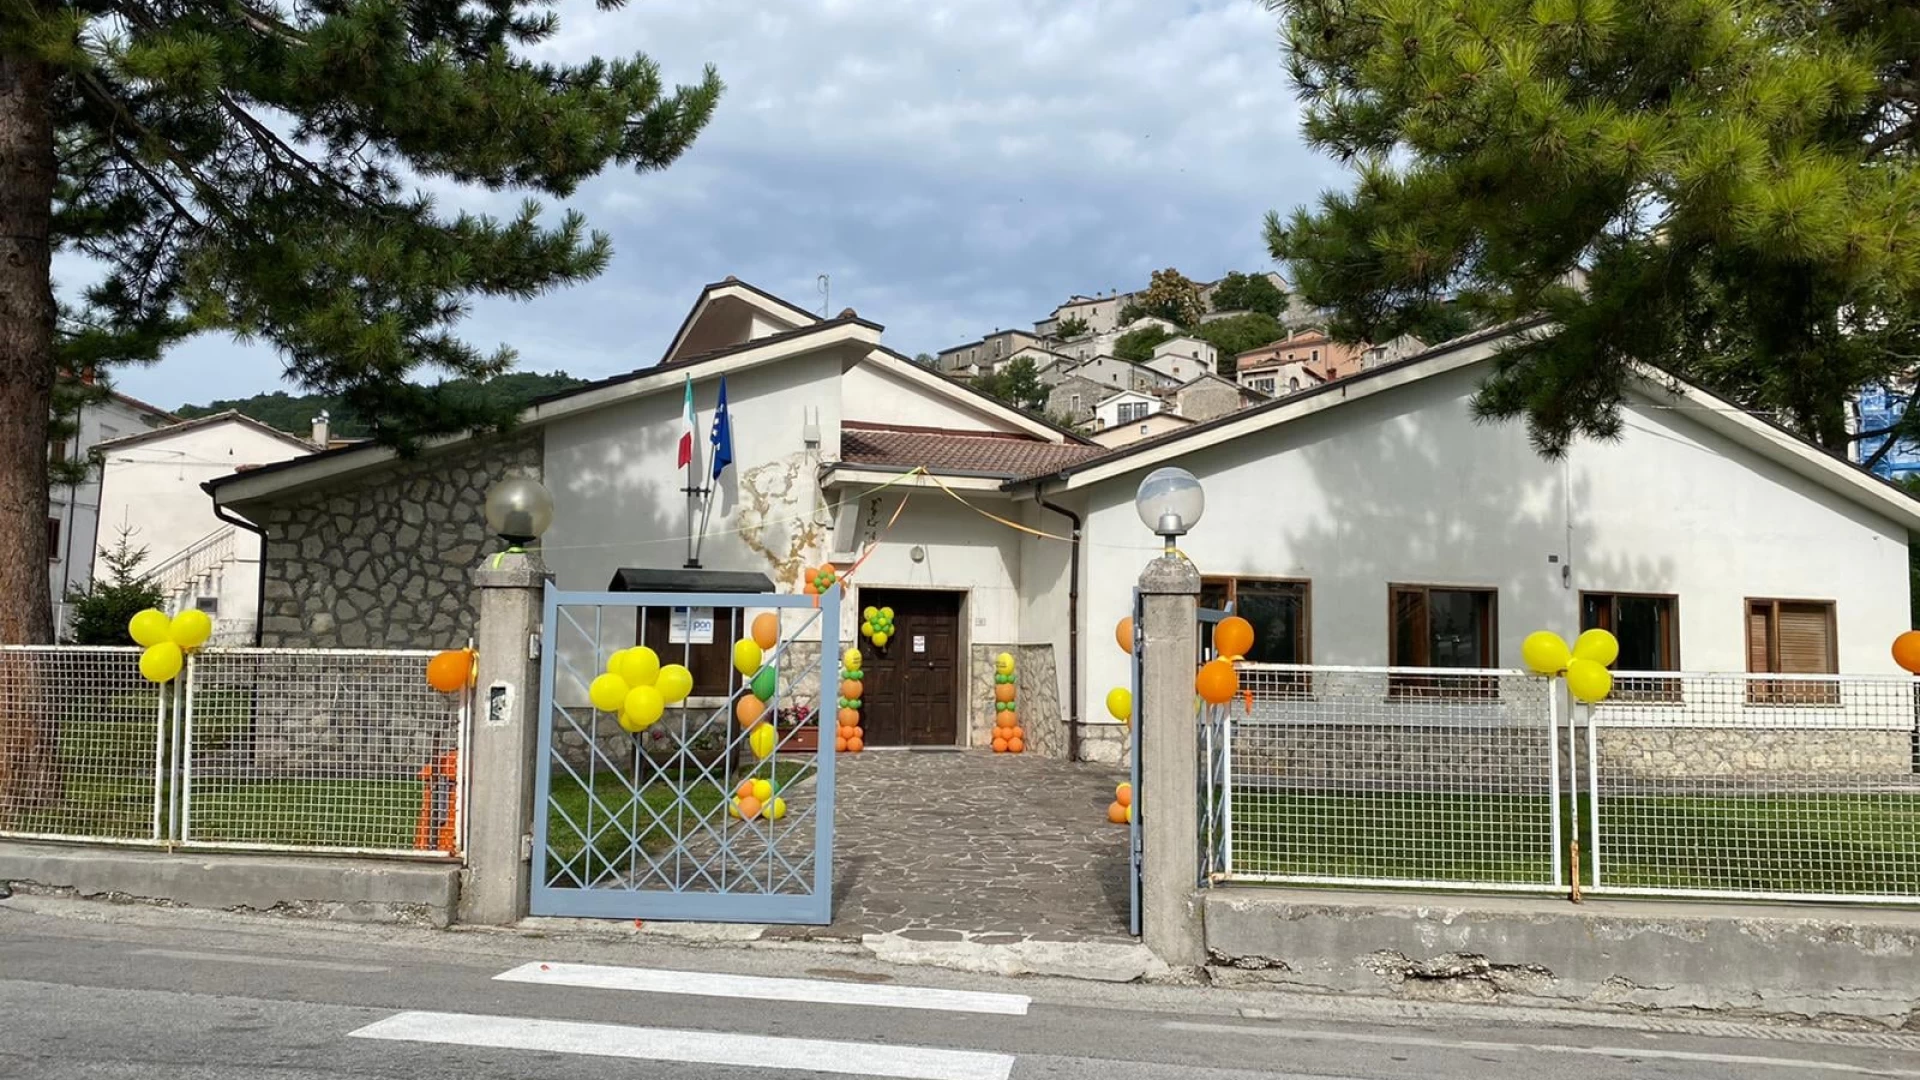 Montenero Val Cocchiara: dopo anni di chiusura riapre l’edificio scolastico con la materna che accoglie i piccoli alunni.